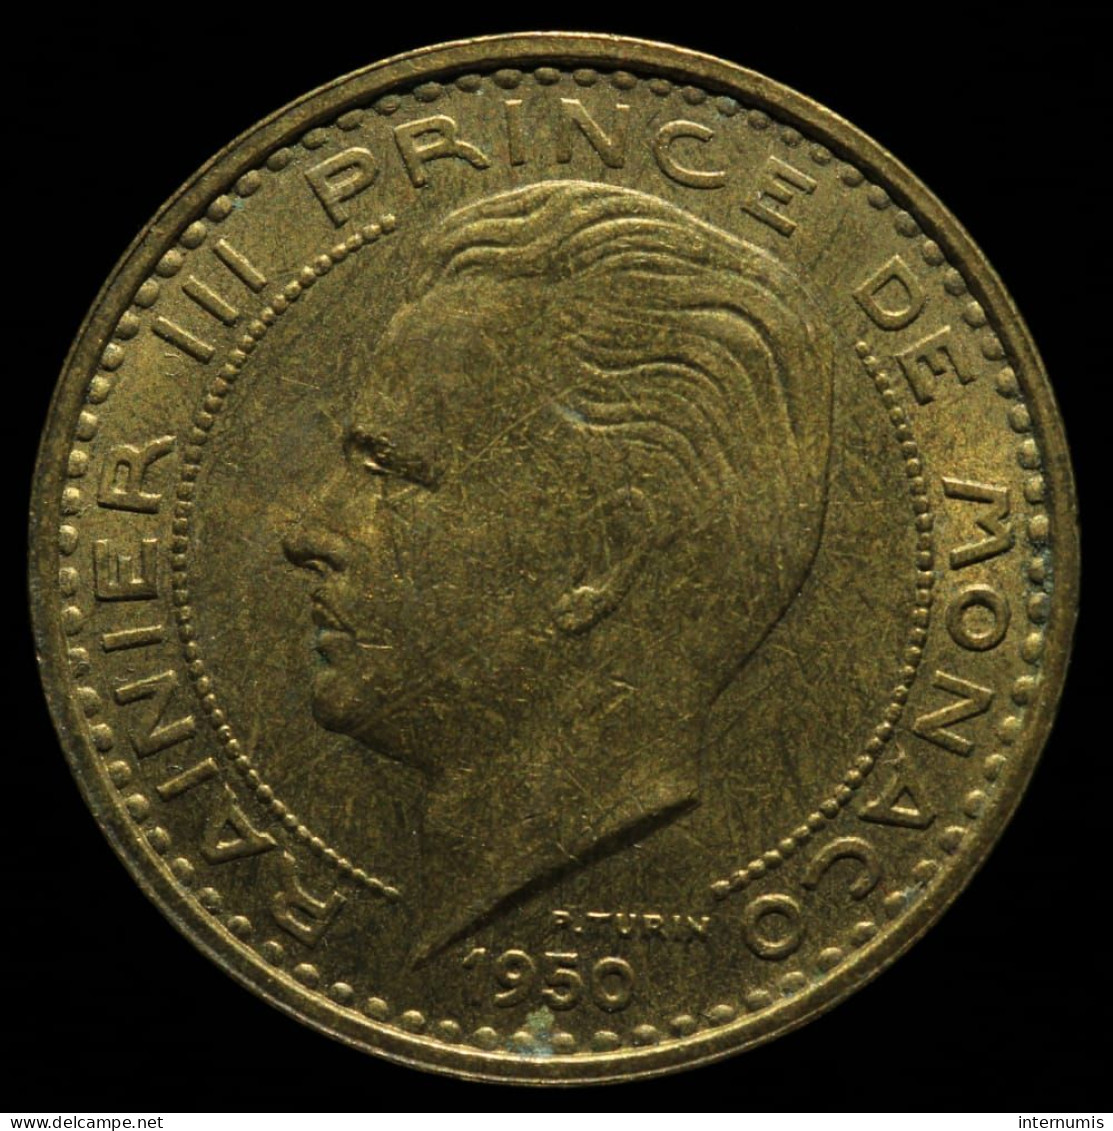 Monaco, Rainier III, 50 Francs, 1950, Cu-Al, NC (UNC), KM#132, G.MC141 - 1949-1956 Old Francs